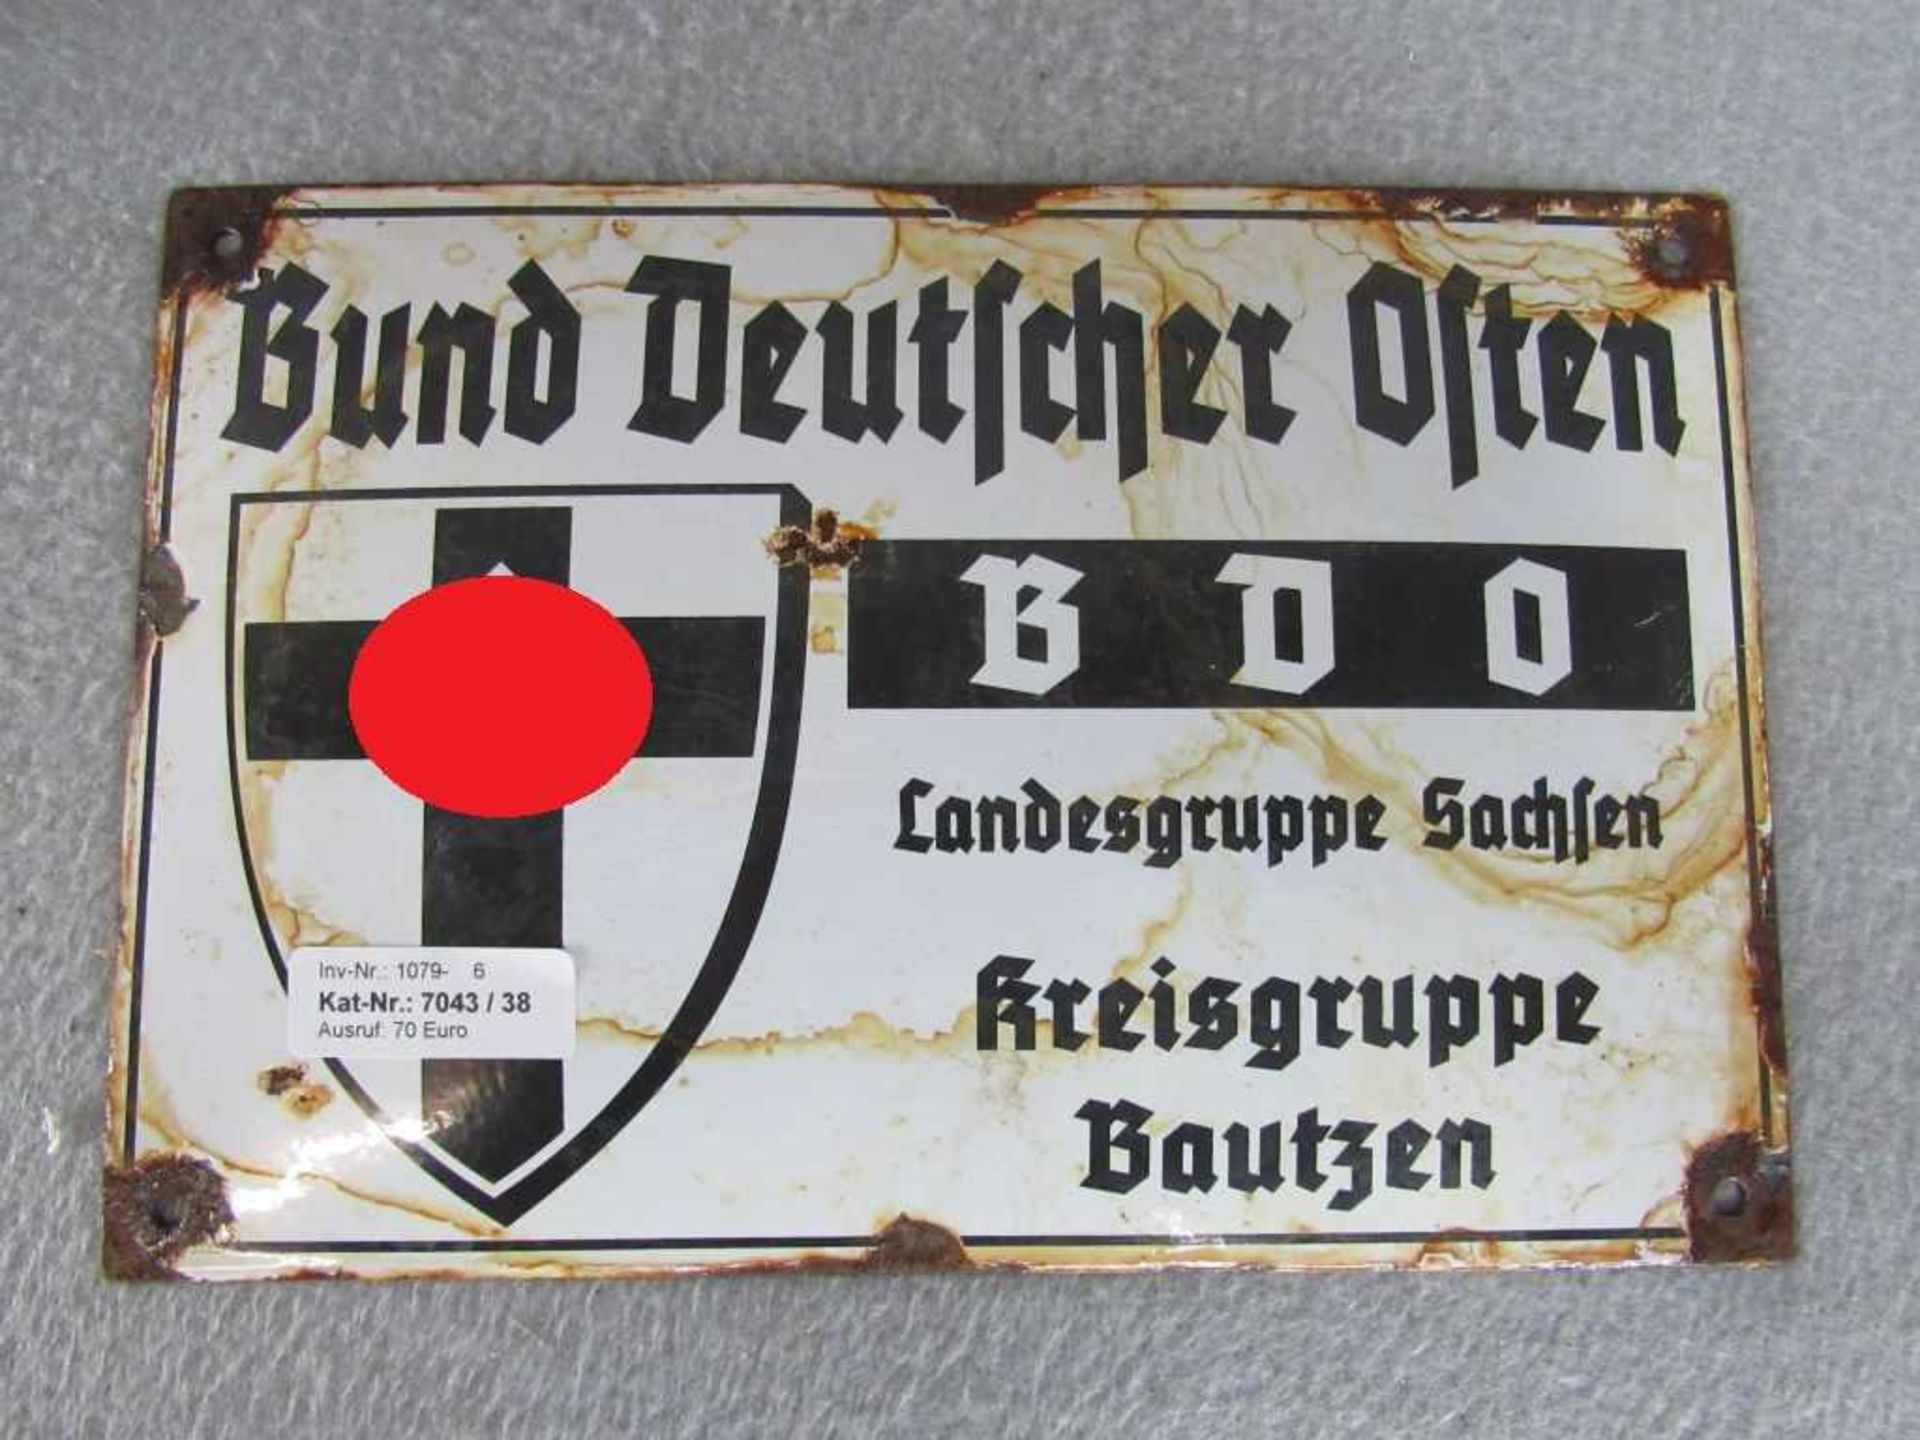 Emaillieschild 2. WK Bund Deutscher Osten BDO Landesgruppe Sachsen Kreisgruppe Bautzen